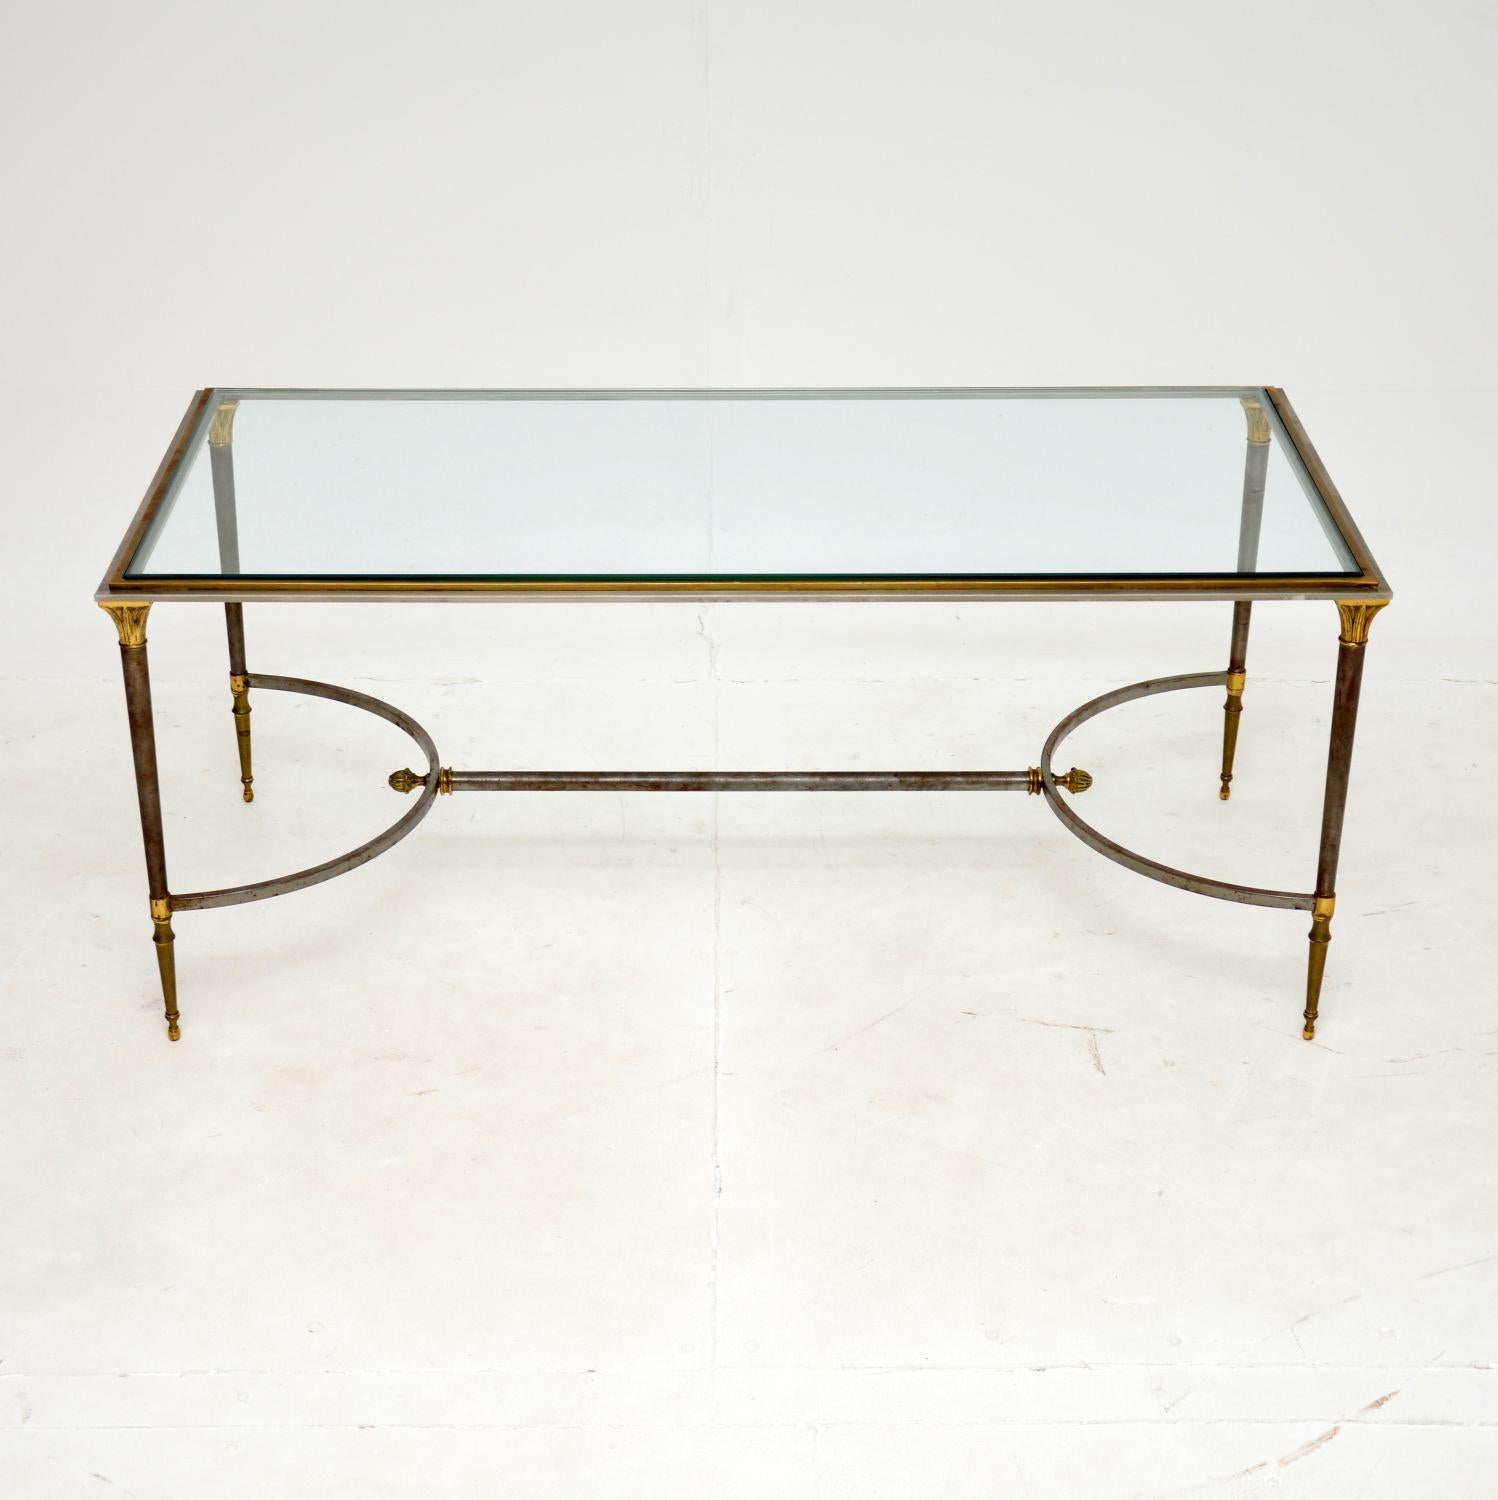 Une superbe table basse vintage de très grande qualité. Fabriqué en France, il date des années 1970.

Le cadre est en acier avec un bord en laiton autour de la partie supérieure et des embellissements en feuilles d'or sur la base. Il présente de